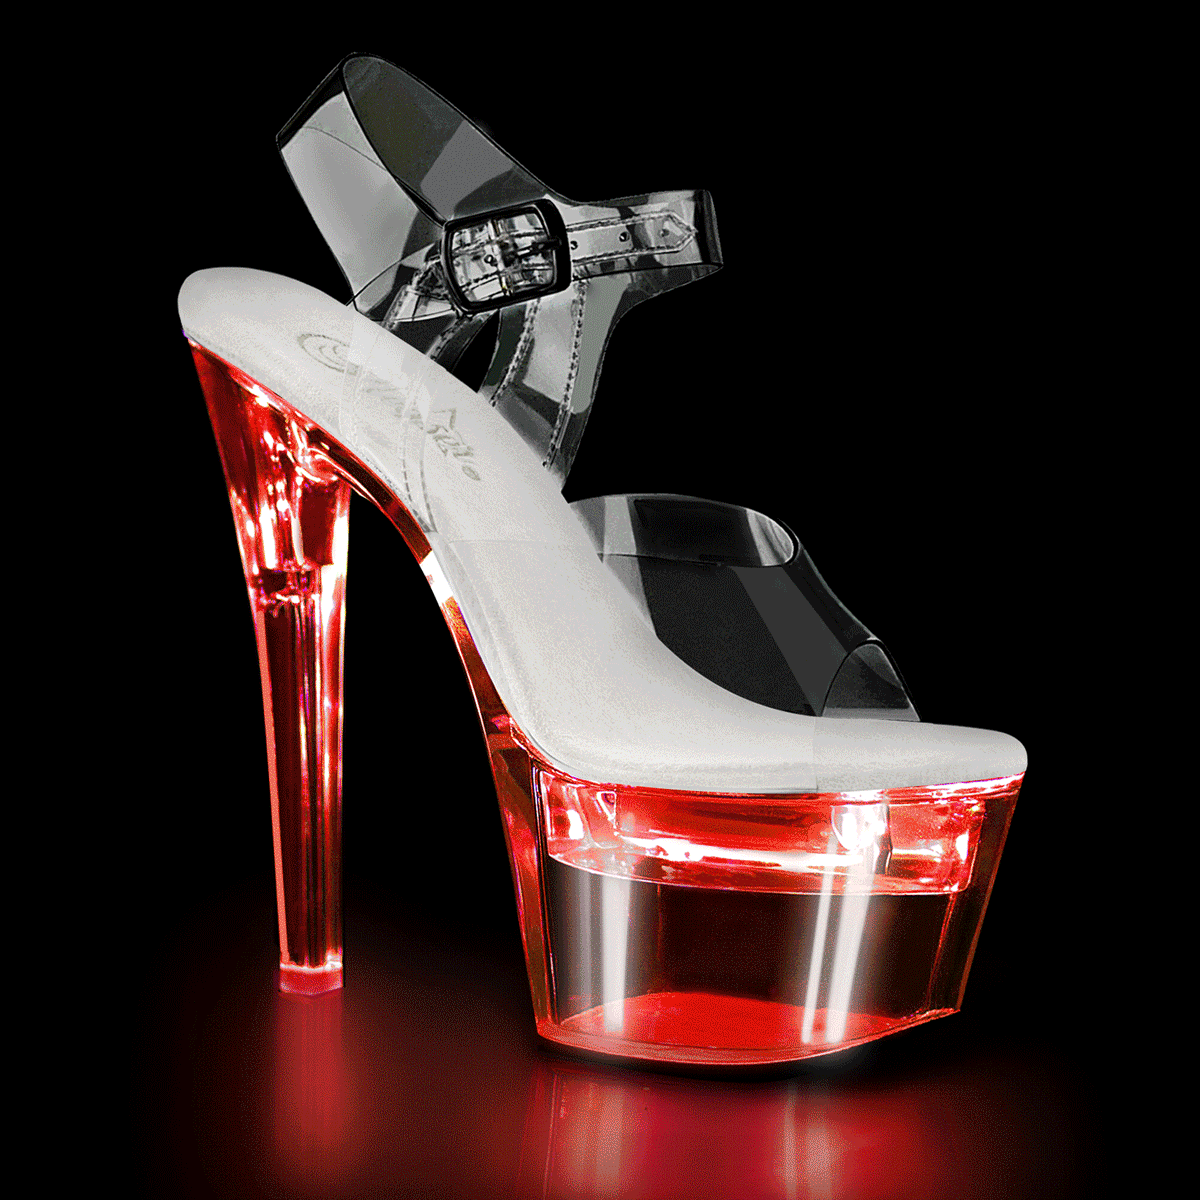 LED Illuminated Ankle Strap Sandal